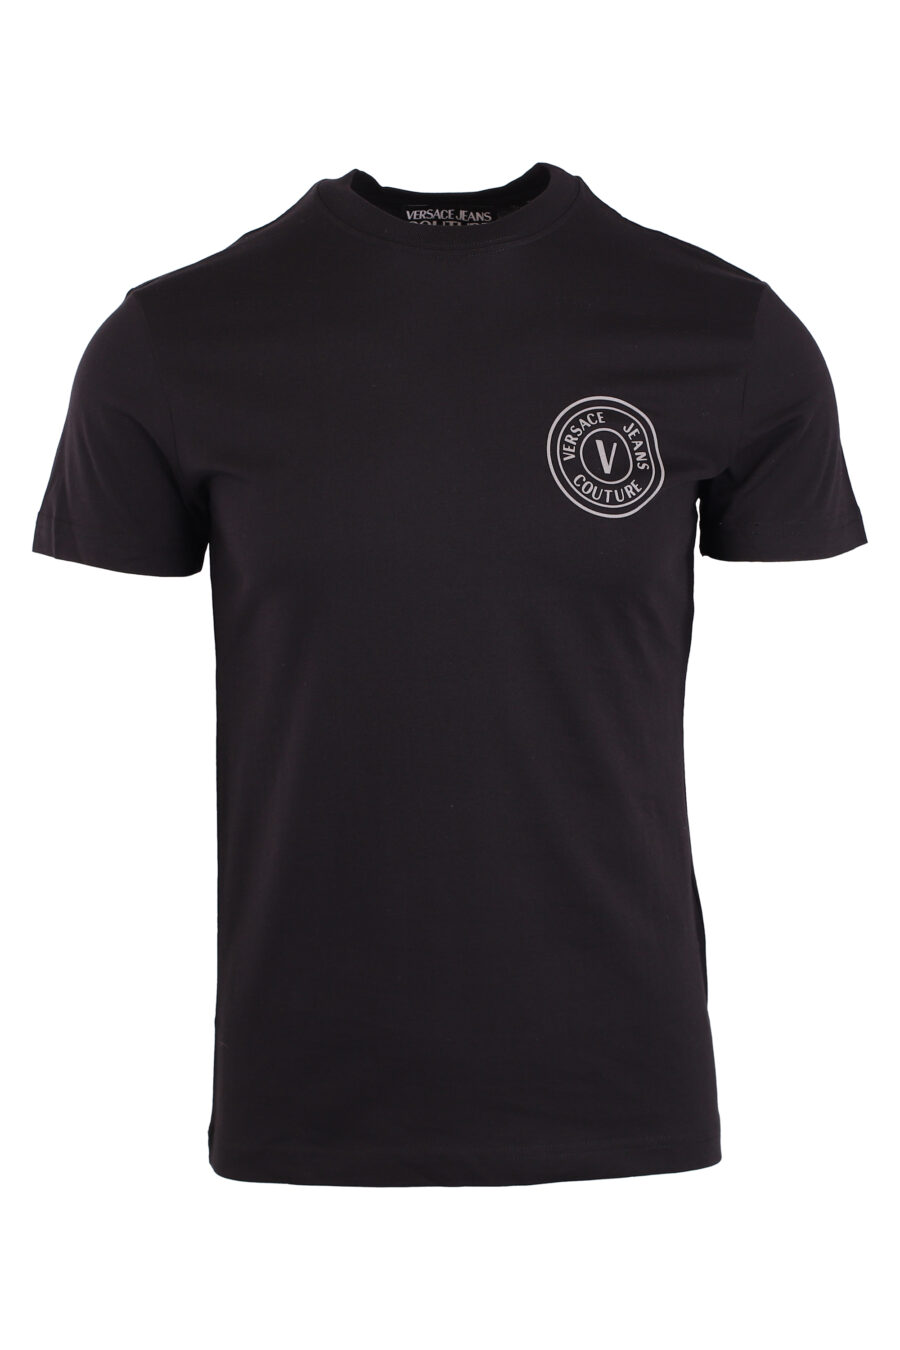 Camiseta negra con logo circular gris - IMG 8944